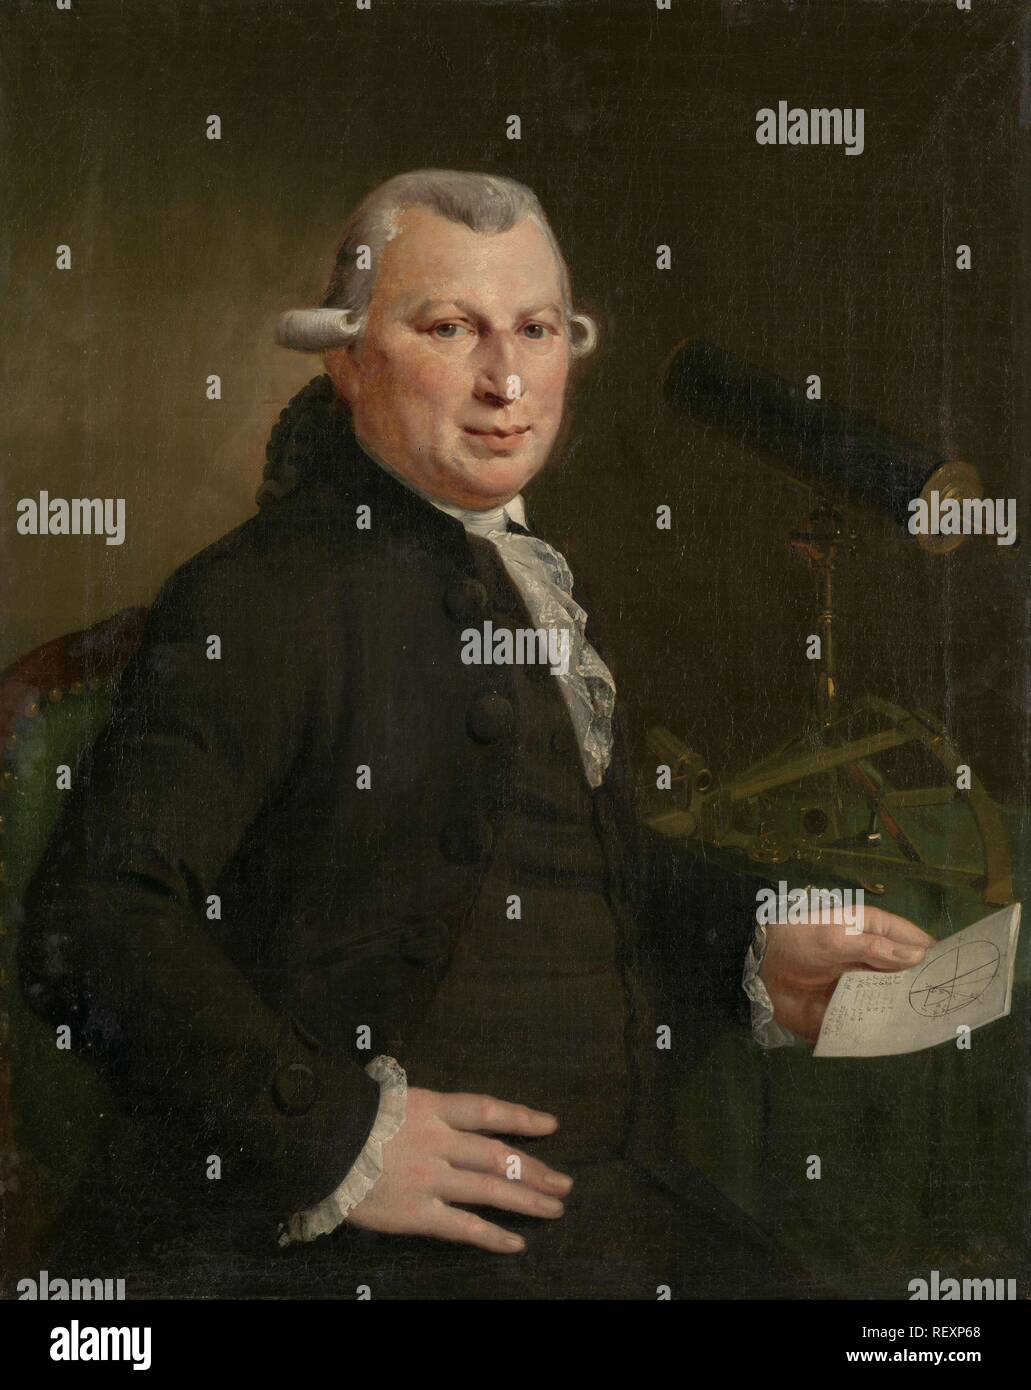 Portrait de Hendrick de Hartog. Portret van Hendrick de Hartog. Dating : 1790. Dimensions : H 79 cm × w 64 cm. Musée : Rijksmuseum, Amsterdam. Auteur : Adriaan de Lelie (mentionné sur l'objet). Banque D'Images